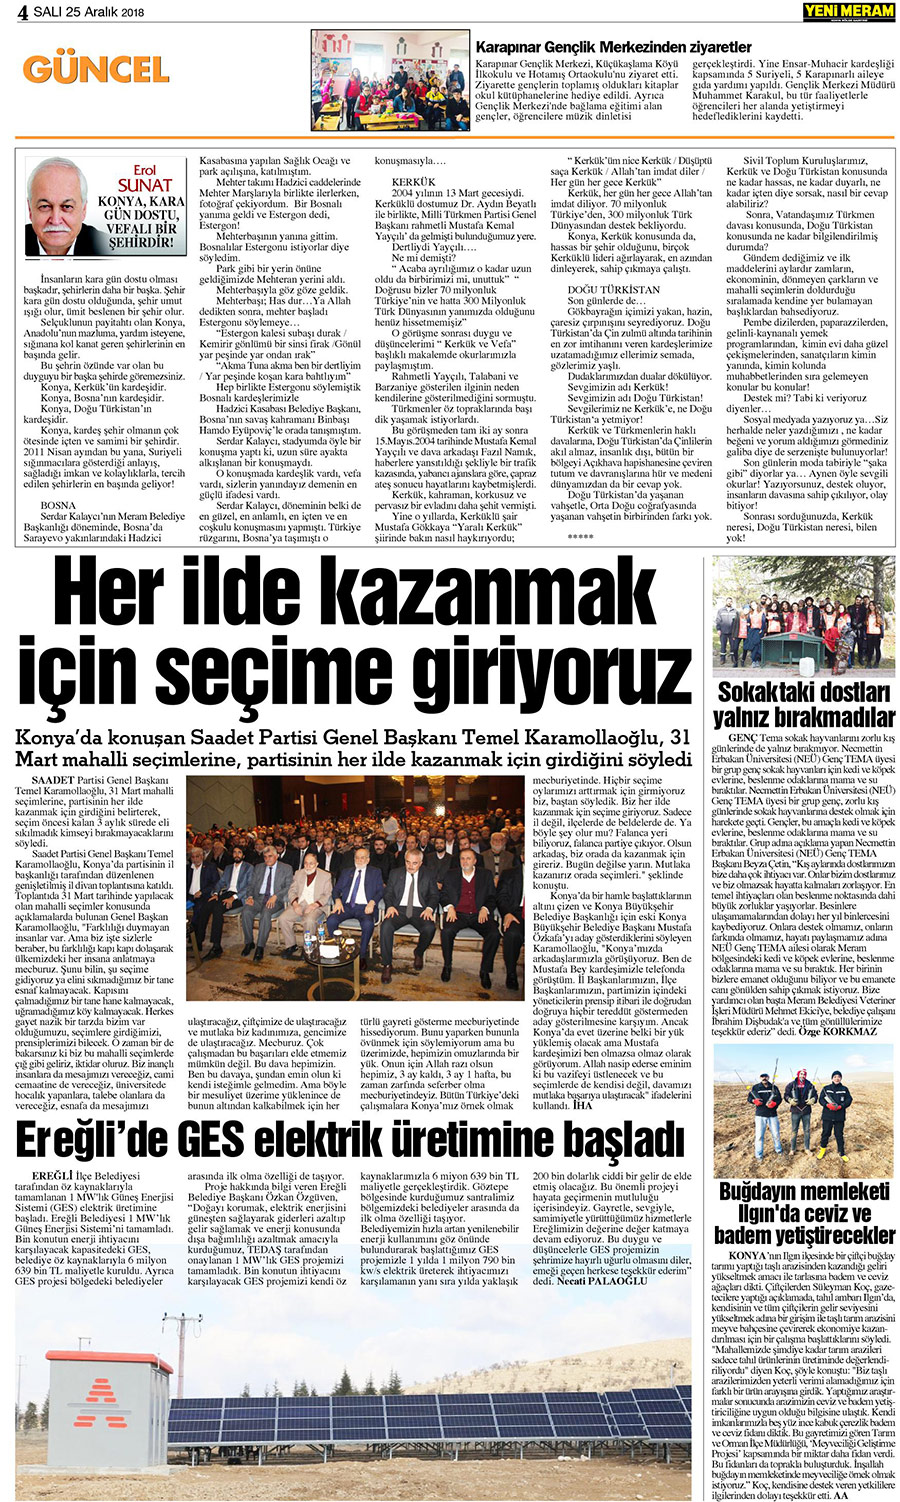 25 Aralık 2018 Yeni Meram Gazetesi